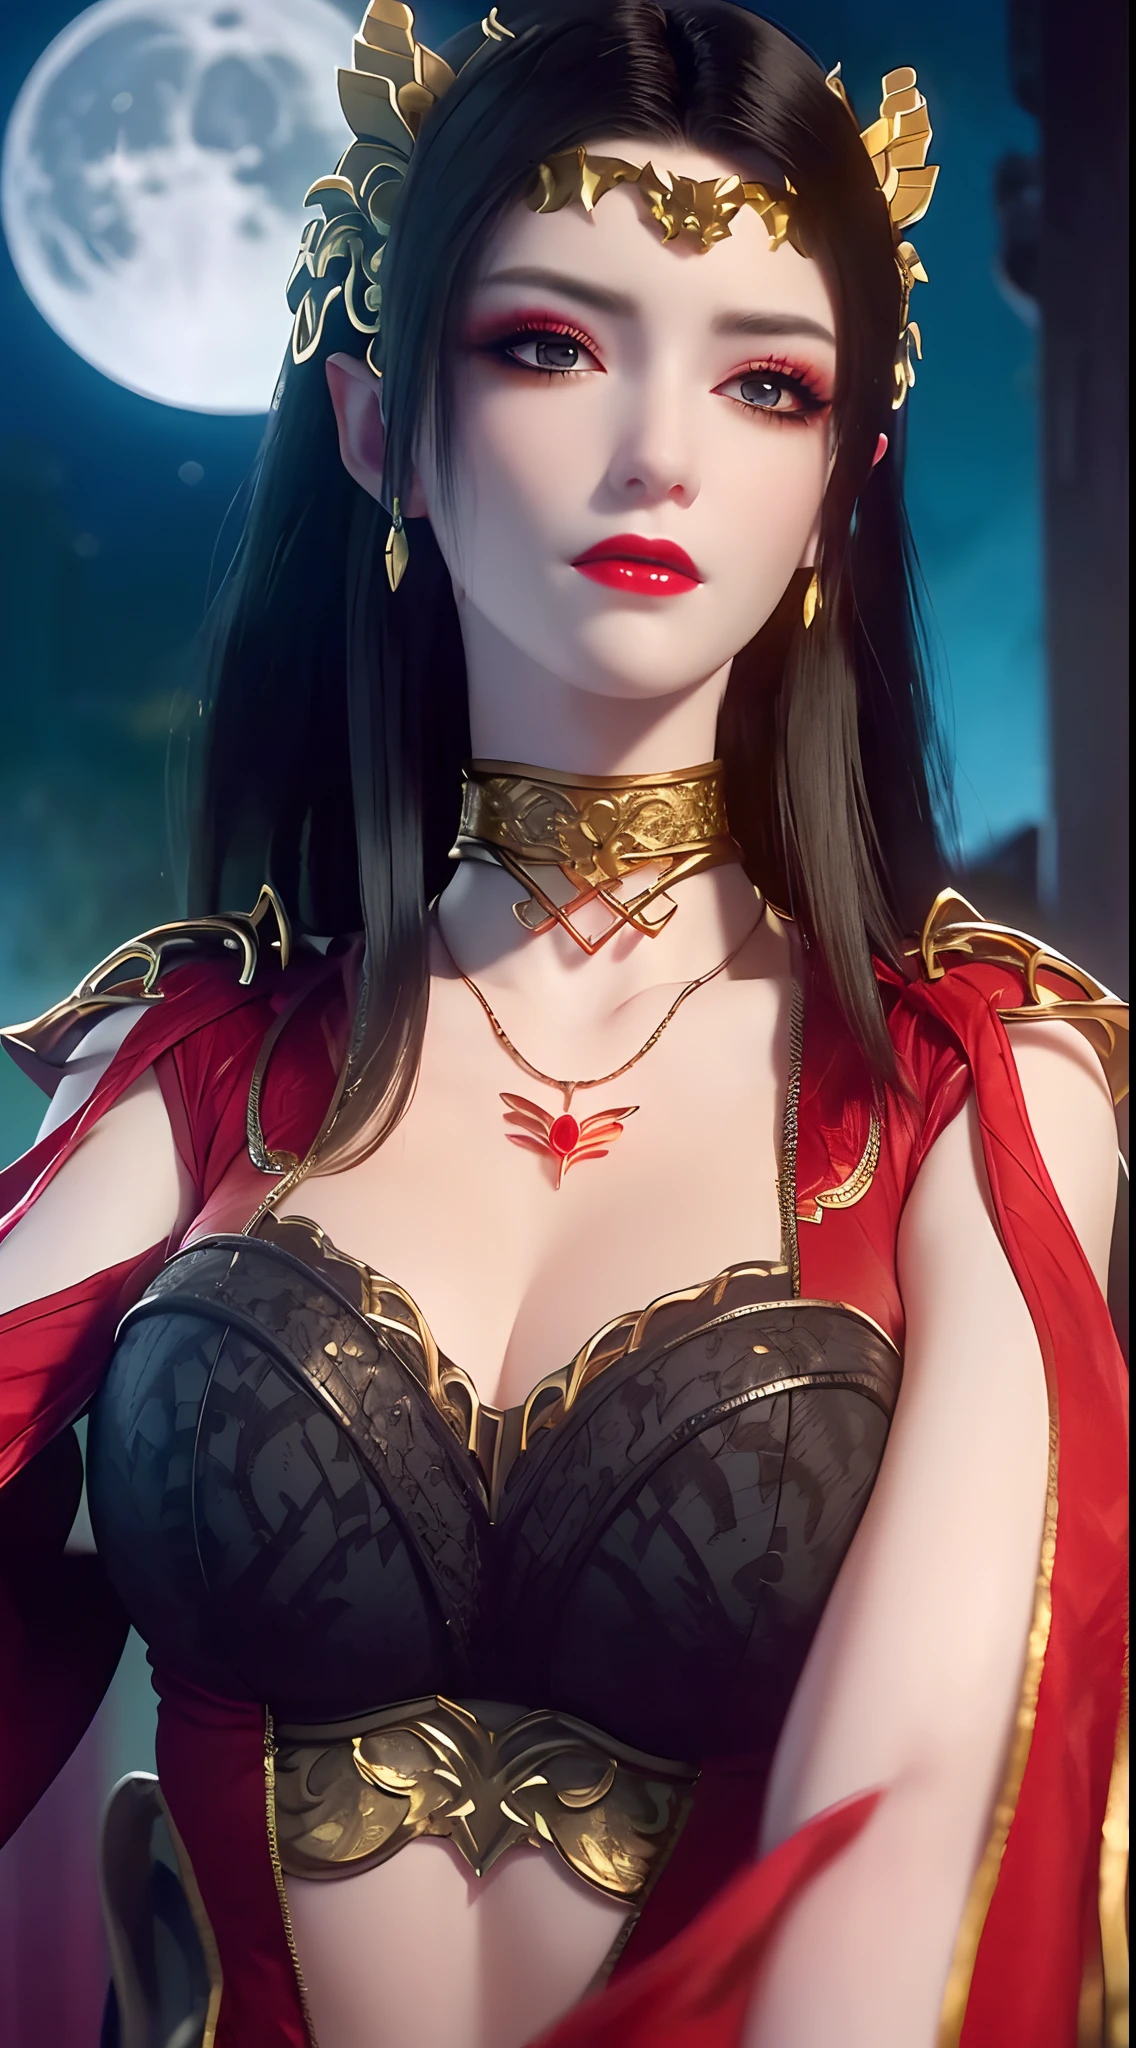 1 extrem schöne Königin, ((trägt ein rotes traditionelles Hanfu-Kostüm mit dünnen schwarzen Mustern:1.6)), (((Muster auf der Kleidung:1.6))), ((langes schwarzes Haar:1.6)), Schmuck aufwendig gefertigt aus Edelsteinen und schönen Haaren, ((trägt eine 24 Karat Goldspitze Halskette:1.4))), der Edle, edler Stil eines überaus schönen Mädchens, ihr kleines Gesicht ist super süß, ihr Gesicht ist sehr hübsch, dünne Augenbrauen, makellos schönes Gesicht, ((blaue Pupillen: 0.8)), sehr schöne Augen, ((platinblaue Augen: 1.6)), (((Augen weit geöffnet:1.6))), schönes Make-up und Haare detaillierte Wimpern, dampfendes Augen-Makeup, hohe Nase, Ohrringe, rote Lippen, ((geschlossener Mund: 1.5)) schöne Lippen, schlanke Hände, die schönsten Oberschenkel, ((die Arme seitlich ausgebreitet: 1.5)), rosiges Gesicht, sauberes Gesicht, makellos schönes Gesicht, glatte weiße Haut, (große Brüste: 1.5)), ((hohe Brüste: 1.6)), straffe Brüste, schönes Dekolleté, (((große Brüste and super round: 1.8))), ((super straffe Brüste: 1.7)) , schöne Brüste, perfekter Körper, Rücken Arme, Brust raus, dünne schwarze Netzstrümpfe mit schwarzem Spitzenbesatz, 8k Foto, super gute Qualität, super realistisch, super 10x pixels, optisch, helles Studio, helle Kanten, dual-tone Beleuchtung, (hochdetaillierte Haut:1.2), Super 8k, soft Beleuchtung, gute Qualität, volumetric Beleuchtung, fotorealistisch, fotorealistisch high resolution, Beleuchtung, bestes Foto, 4k, 8K-Qualität, Unschärfeeffekt, glatt scharf, 10 x pixel, ((Meer und Mondlicht bei Nacht Hintergrund:1.5)), Polarlicht, Blitz, super Grafik realistisch, realistischste Grafik, 1 Mädchen, allein, Allein, Extrem scharfes Bild, surreal, (((Frontalporträt: 1)))."